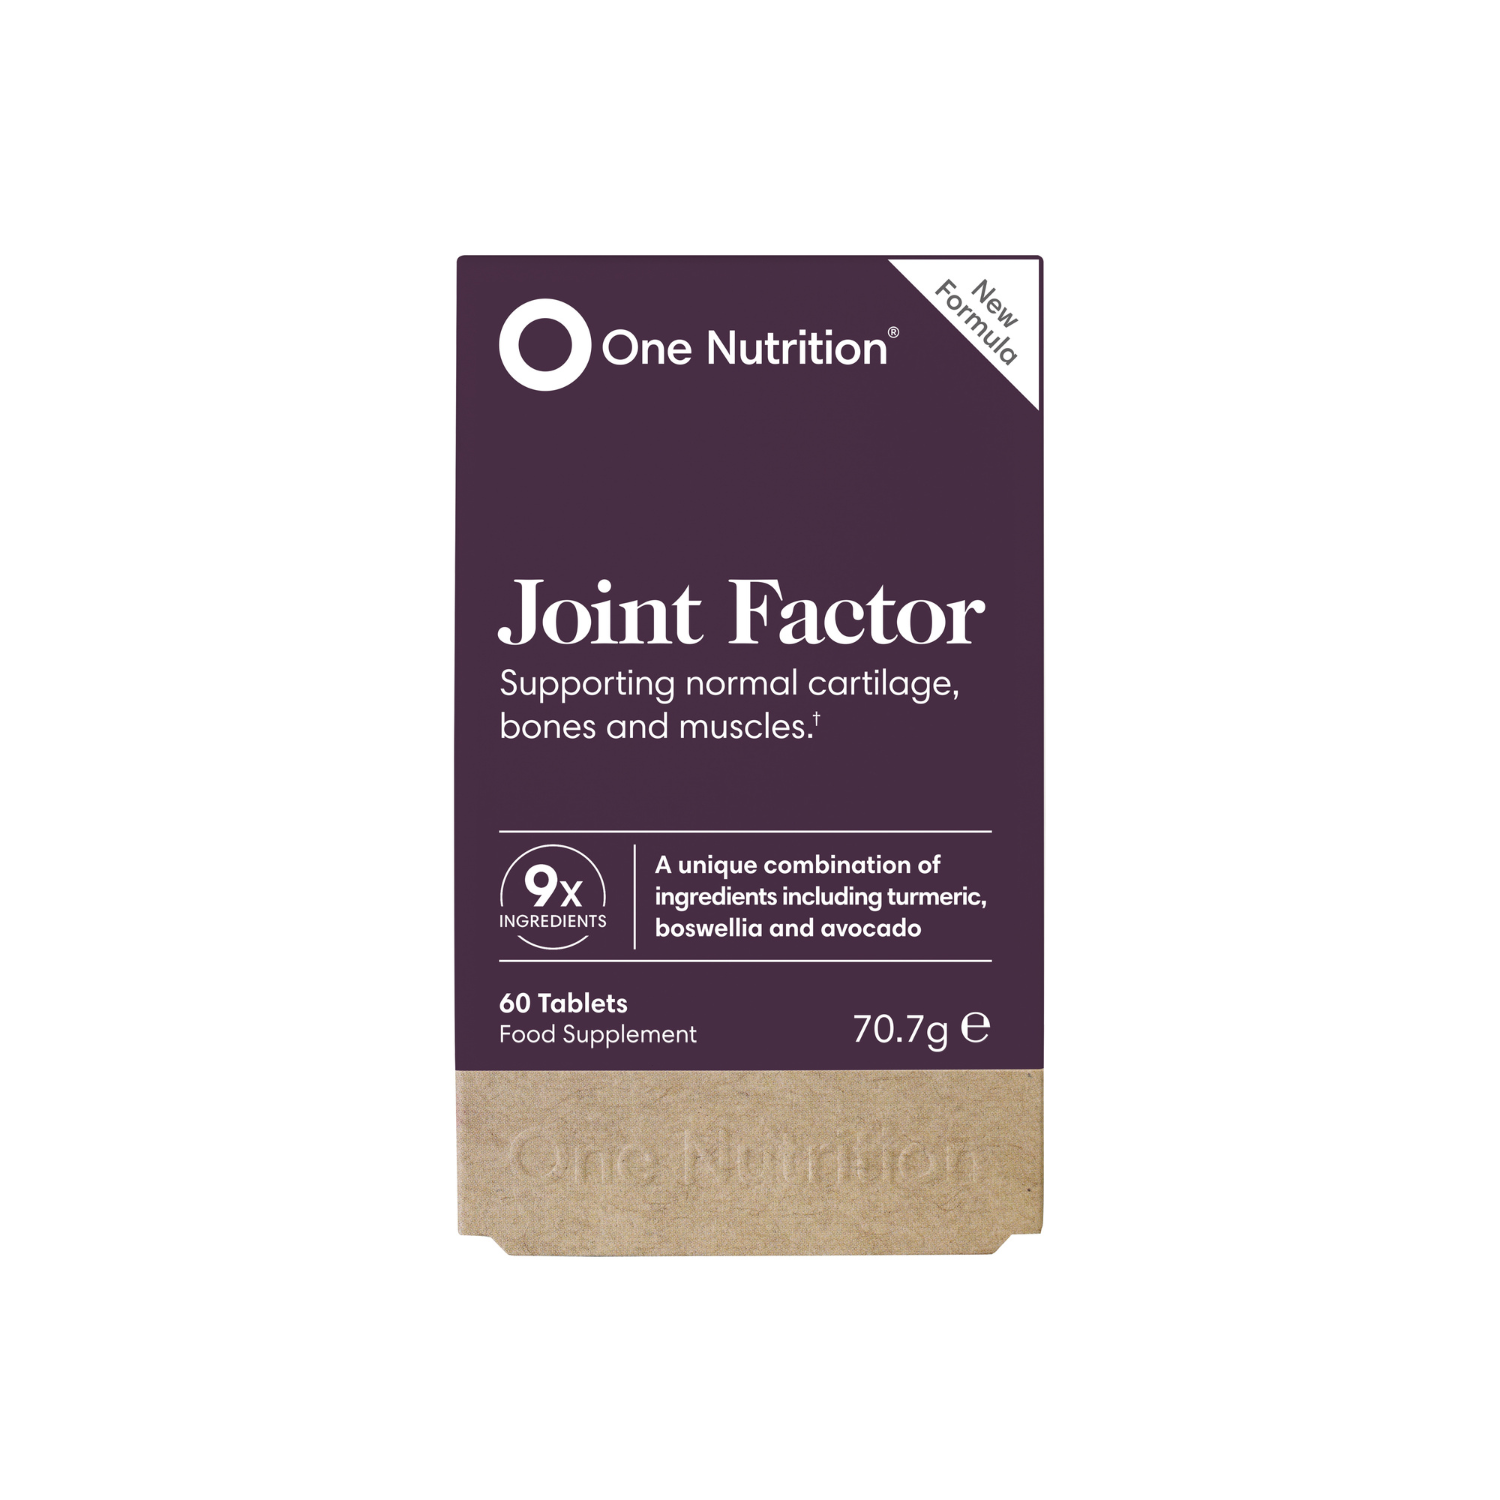 One Nutrition "Joint Factor" kremzlėms, kaulams, jungiamojo audinio ir raumenų būklei